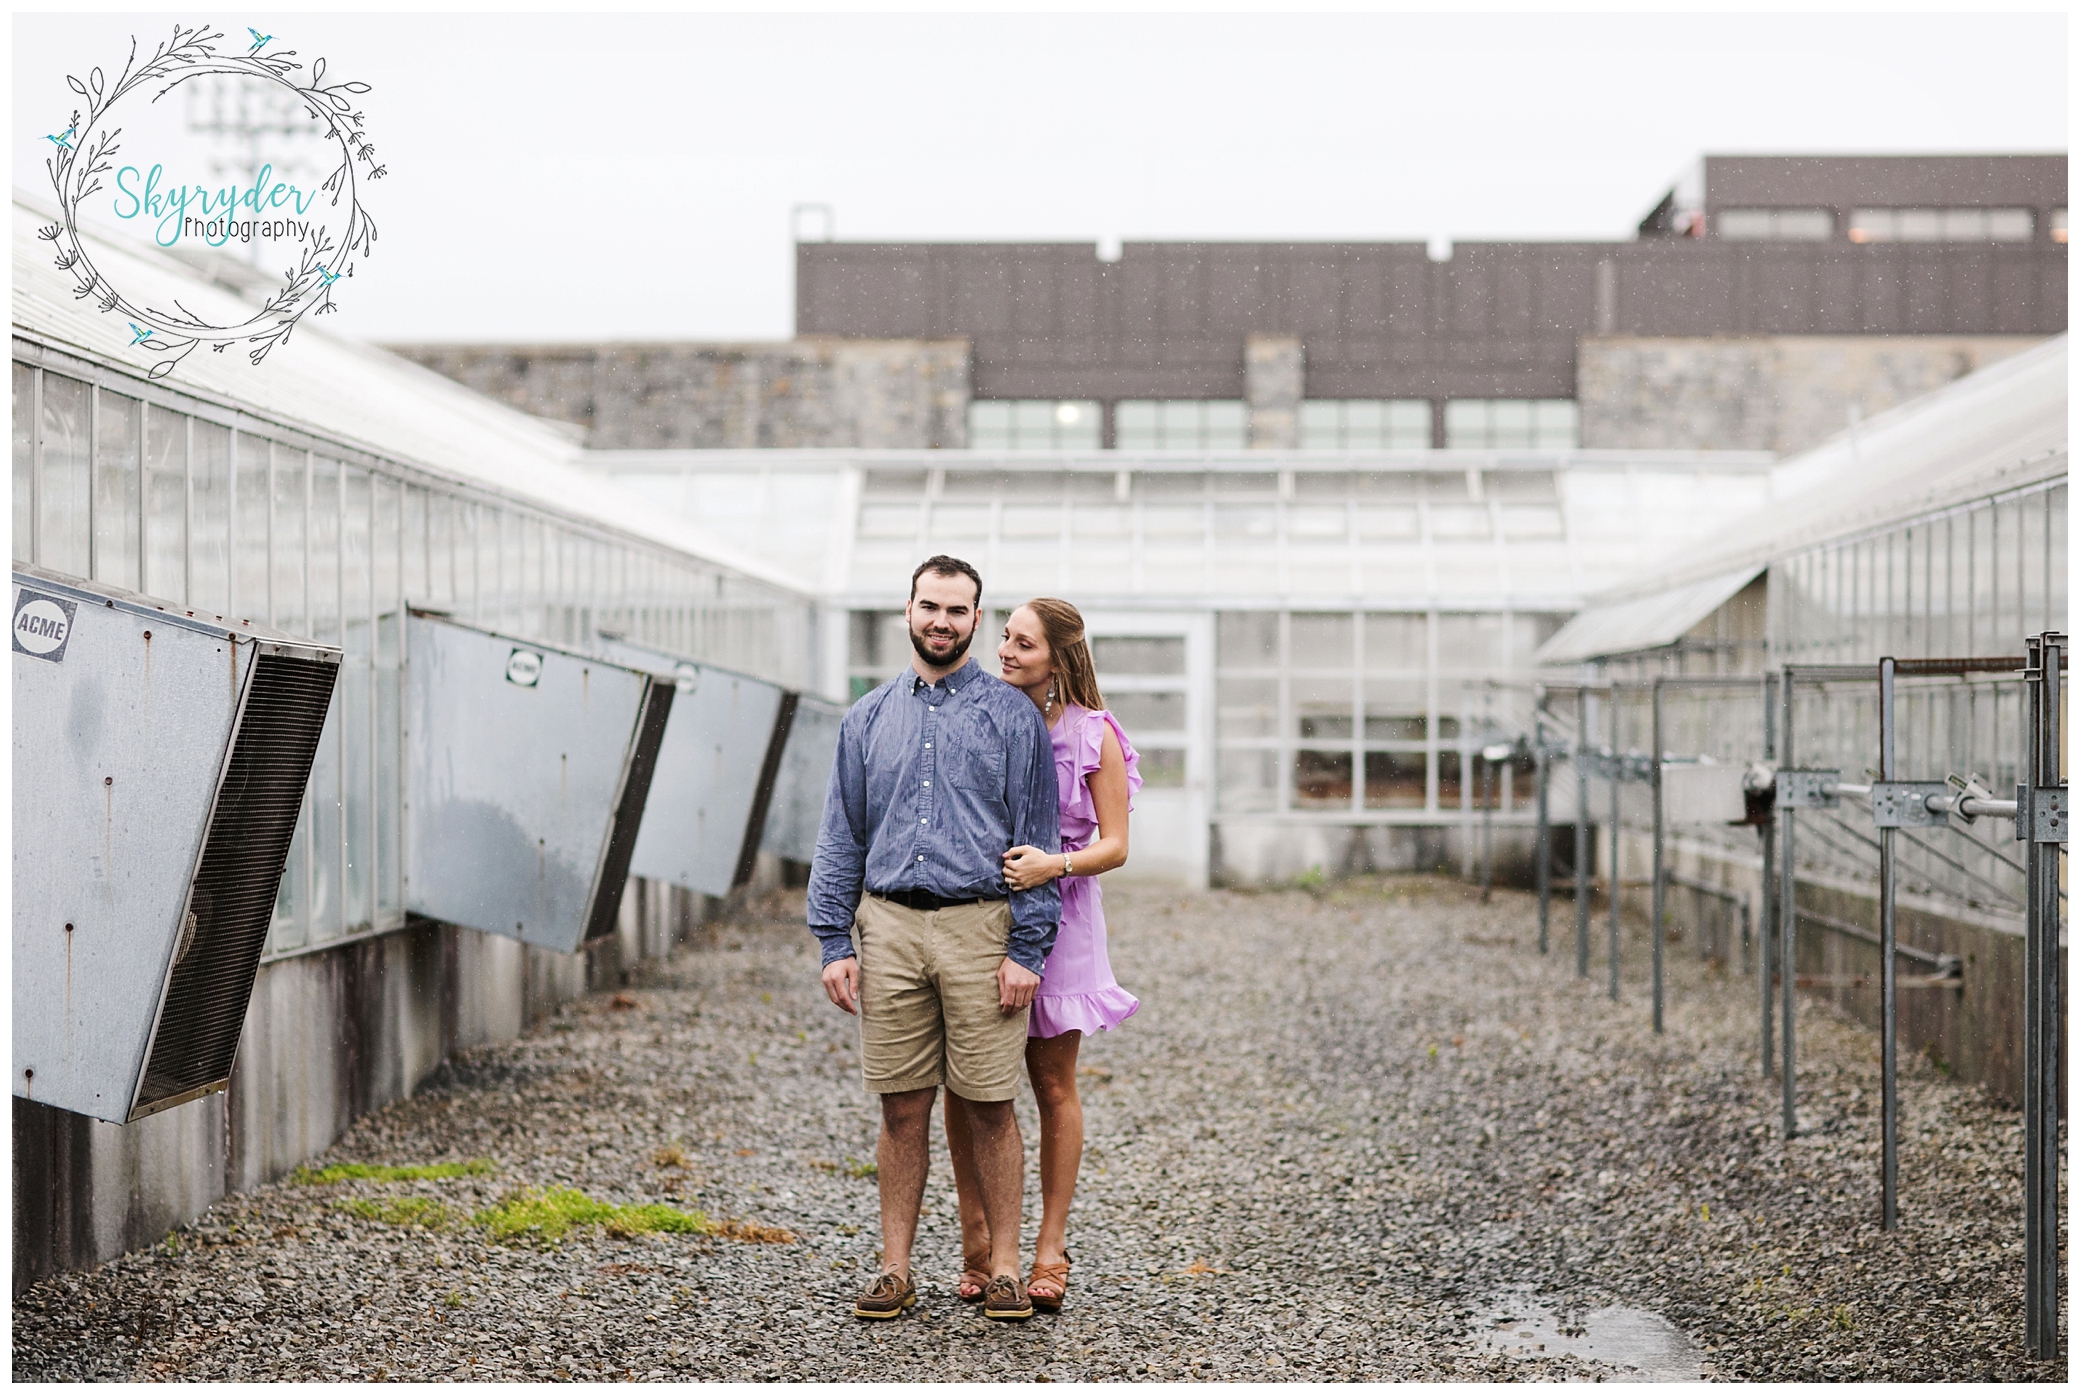 Maria + Zac | Blacksburg Engagement Photographer